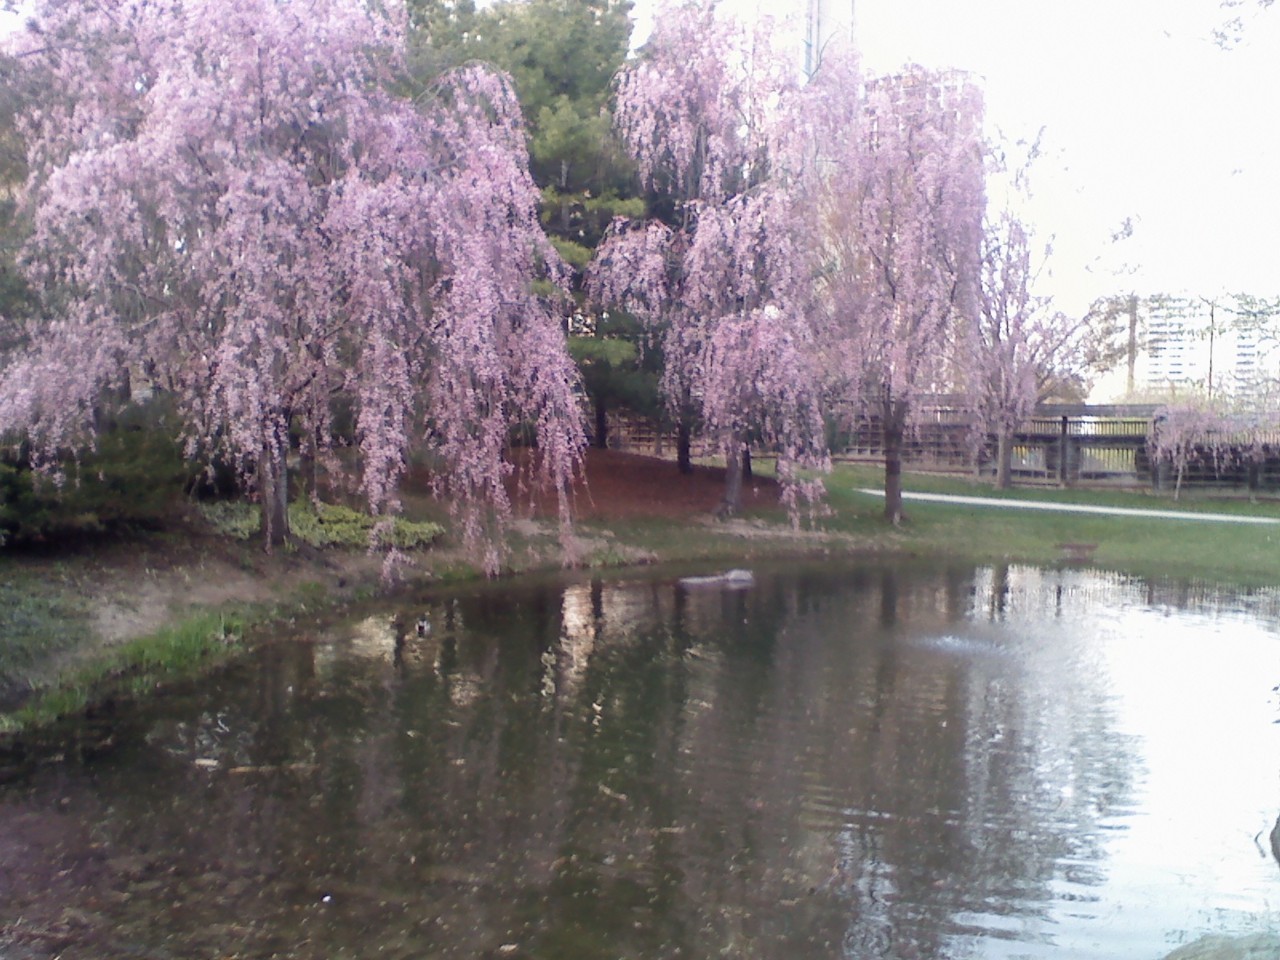 God, I need to go to Kariya Park soon. I love cherry blossom trees.